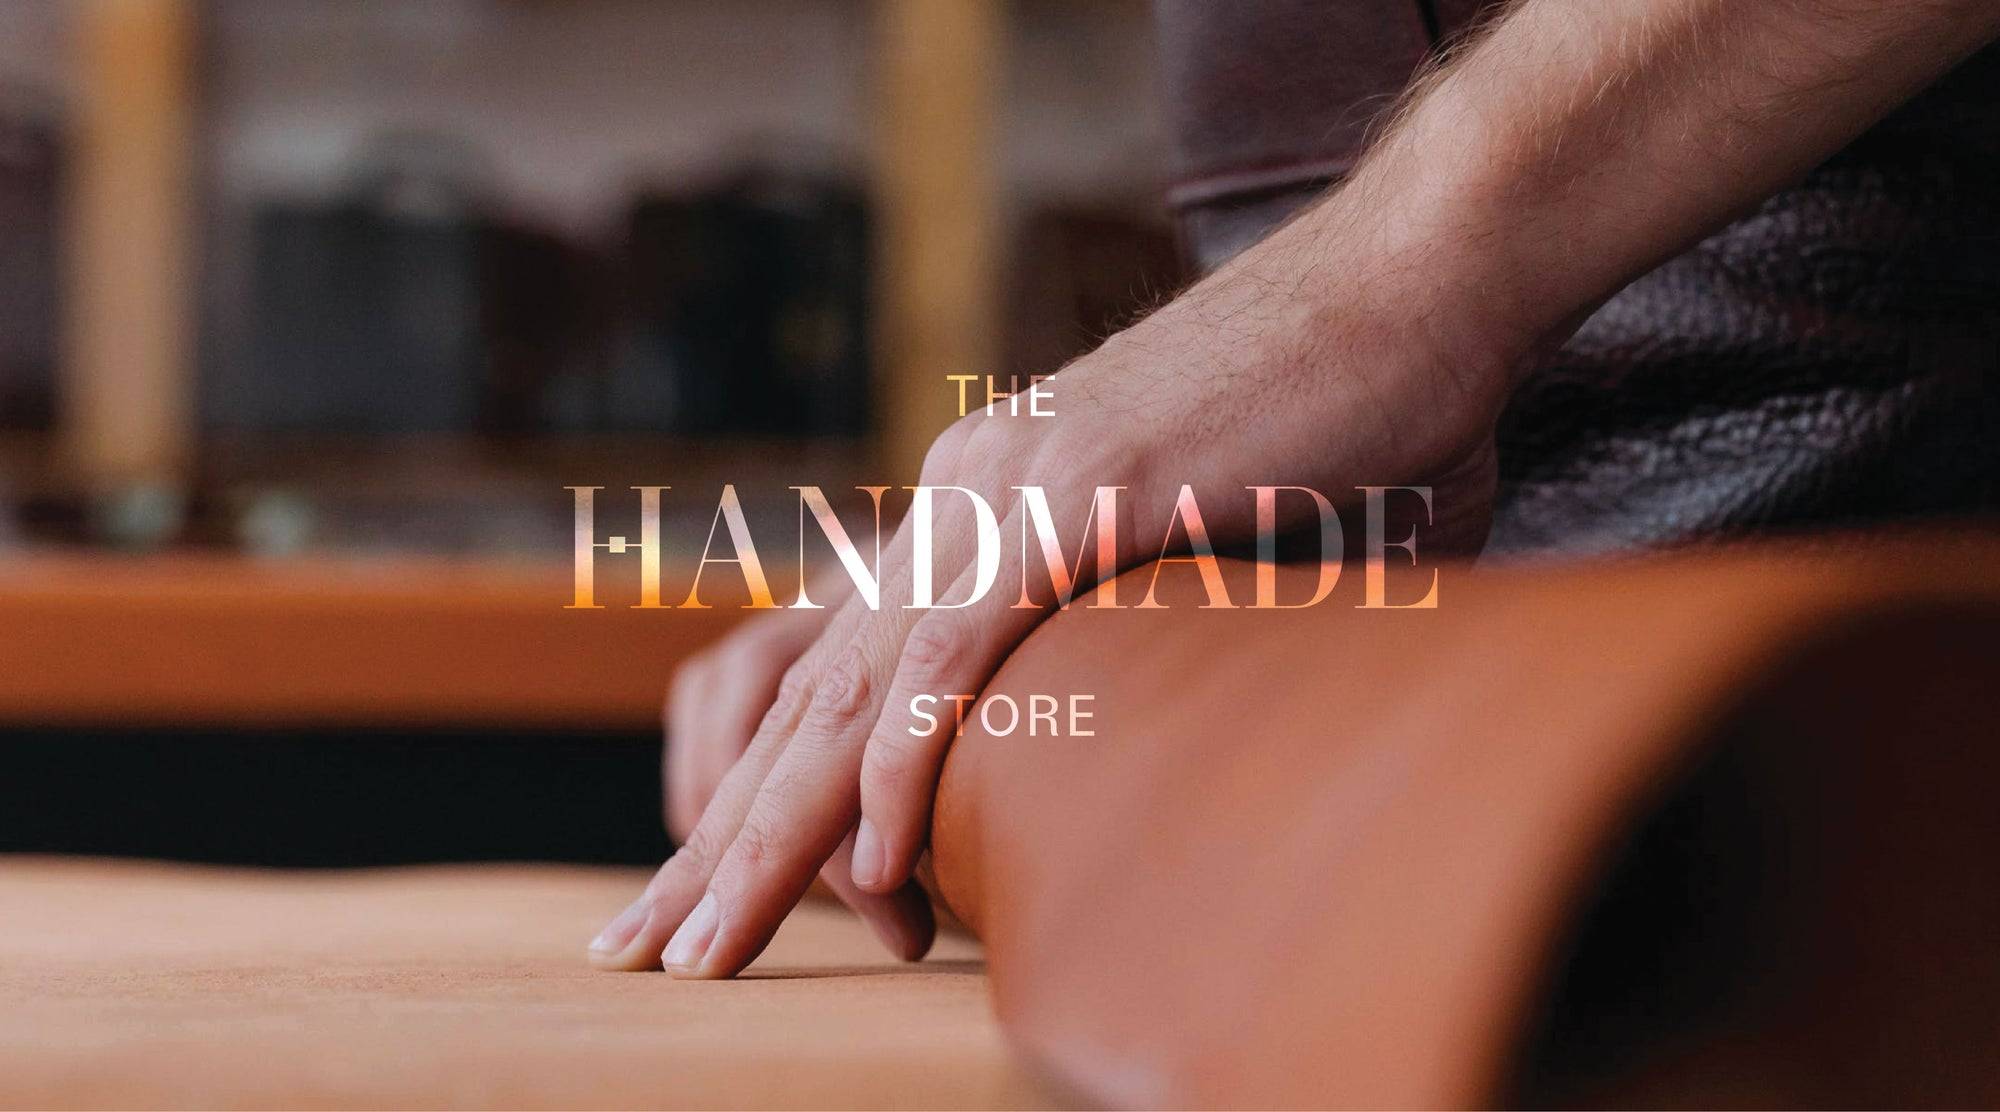 The Handmade Store